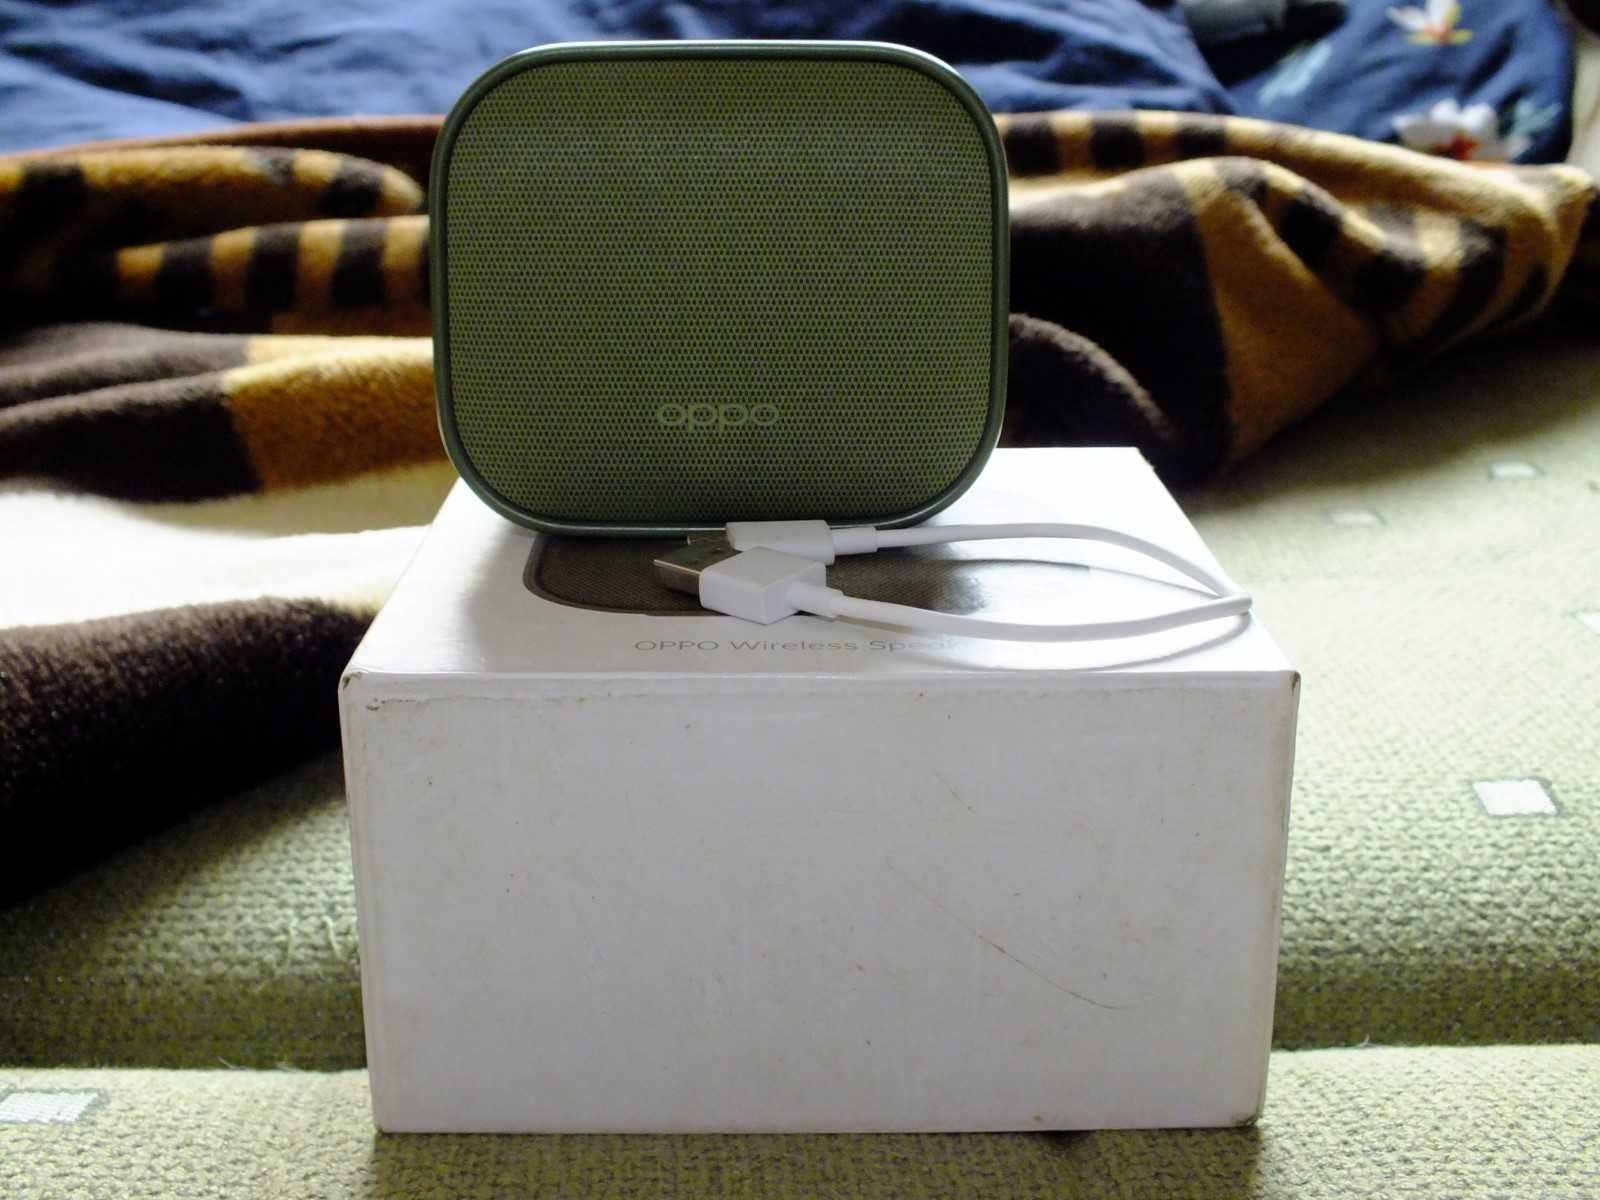 Głośnik przenośny Oppo OBMC03 zielony 3 W w idealnym stanie jak nowy